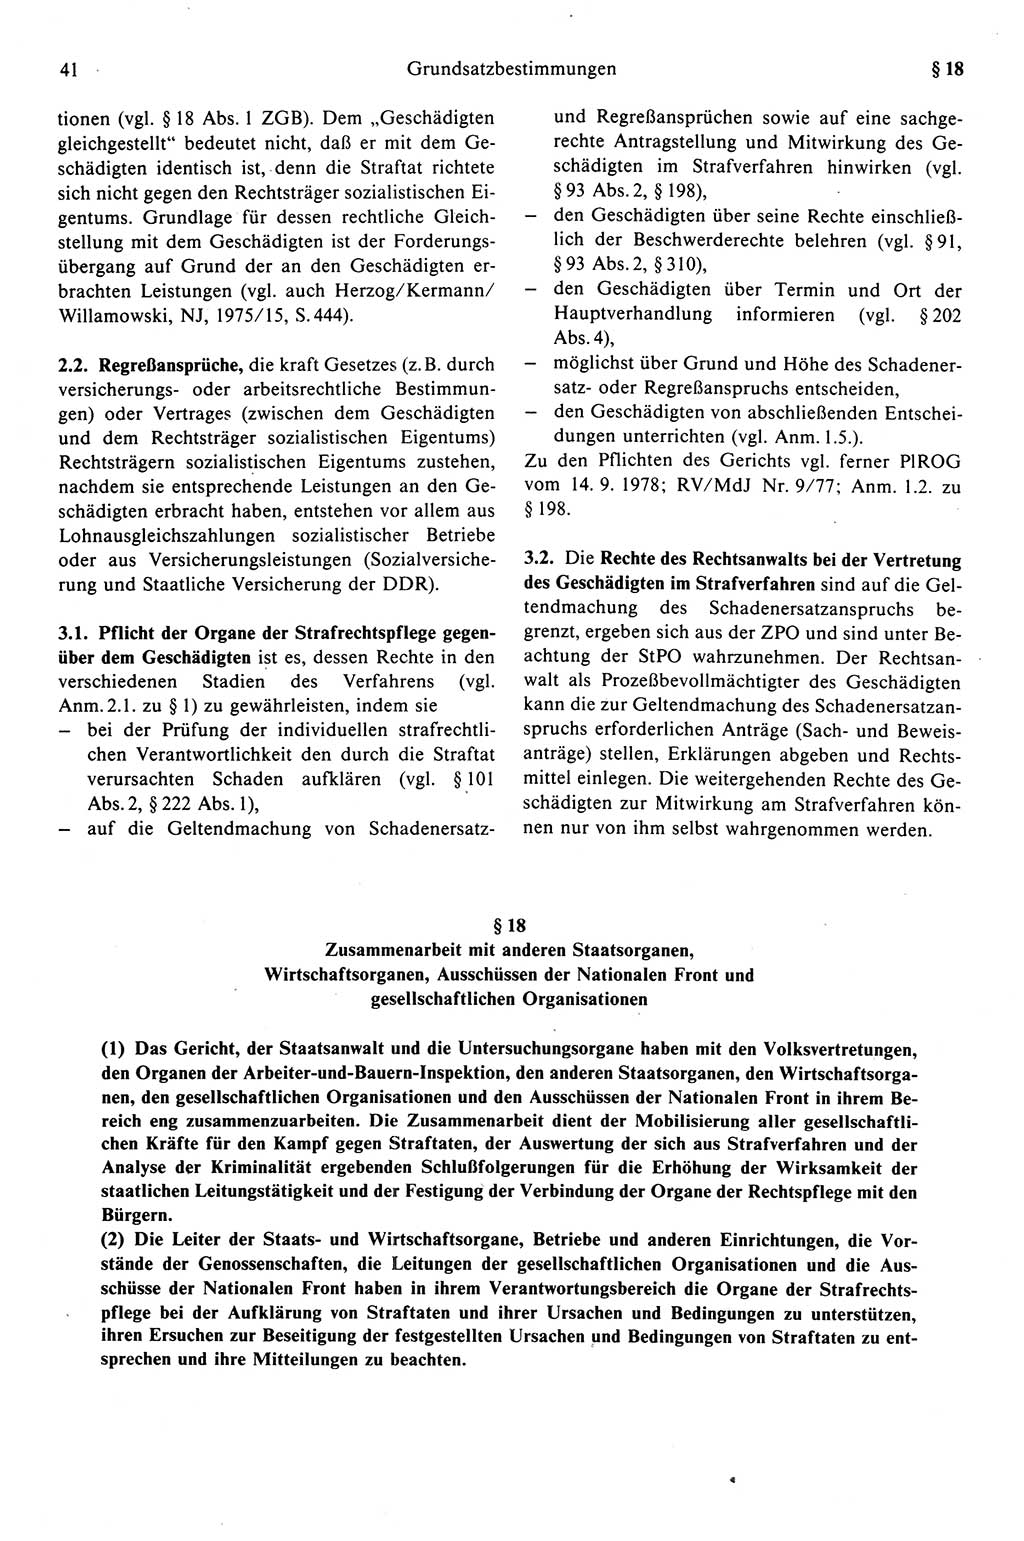 Strafprozeßrecht der DDR (Deutsche Demokratische Republik), Kommentar zur Strafprozeßordnung (StPO) 1989, Seite 41 (Strafprozeßr. DDR Komm. StPO 1989, S. 41)